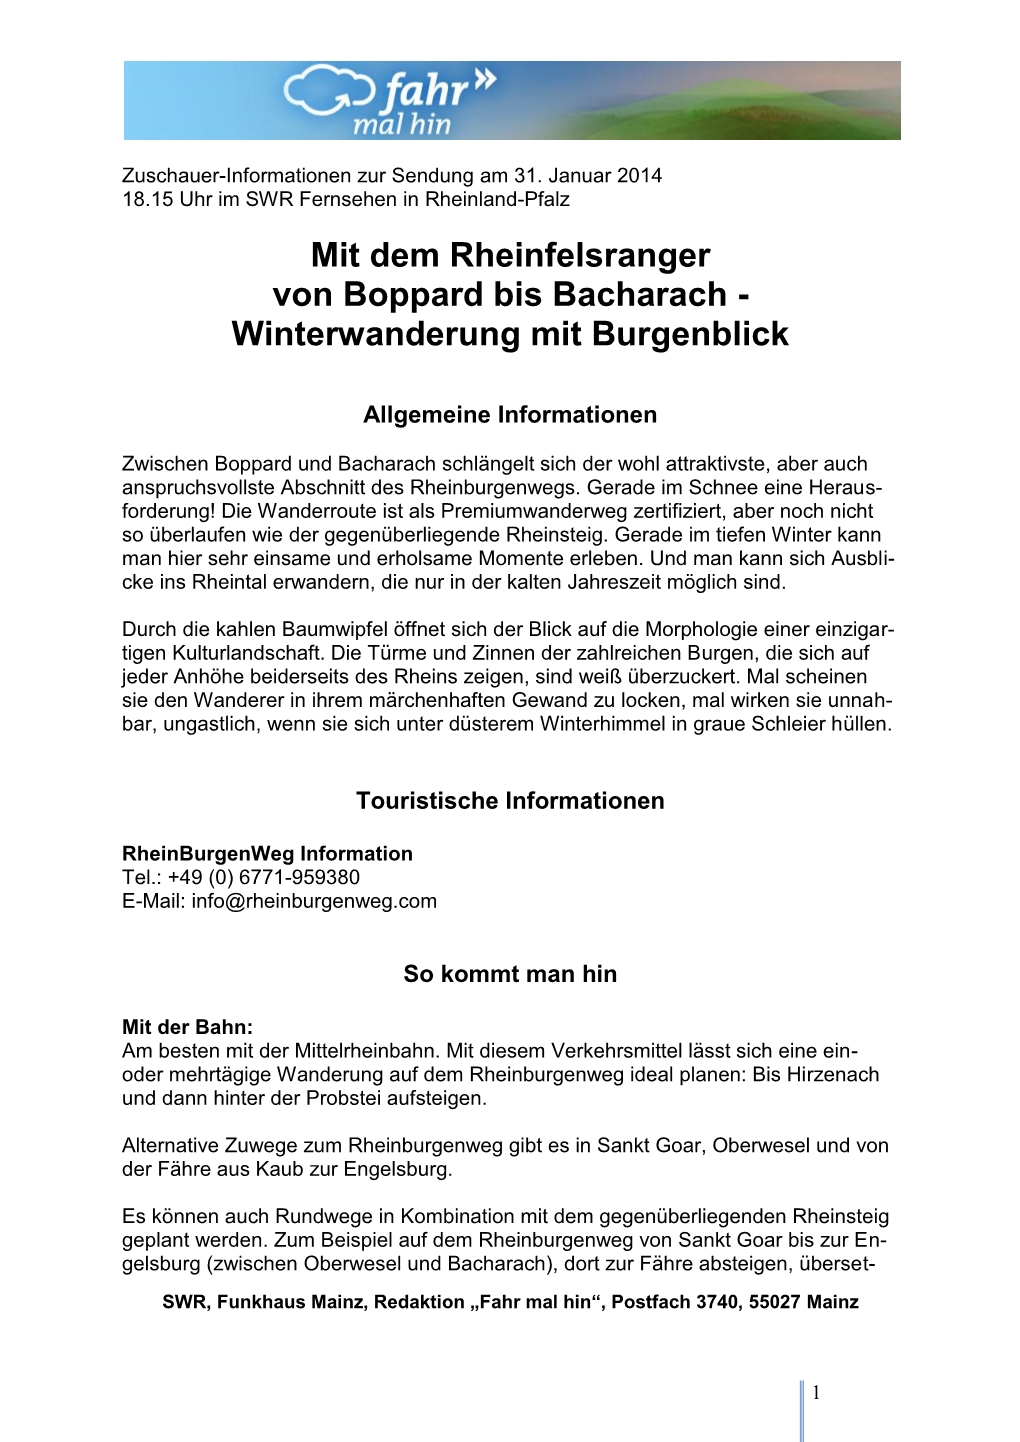 Mit Dem Rheinfelsranger Von Boppard Bis Bacharach - Winterwanderung Mit Burgenblick